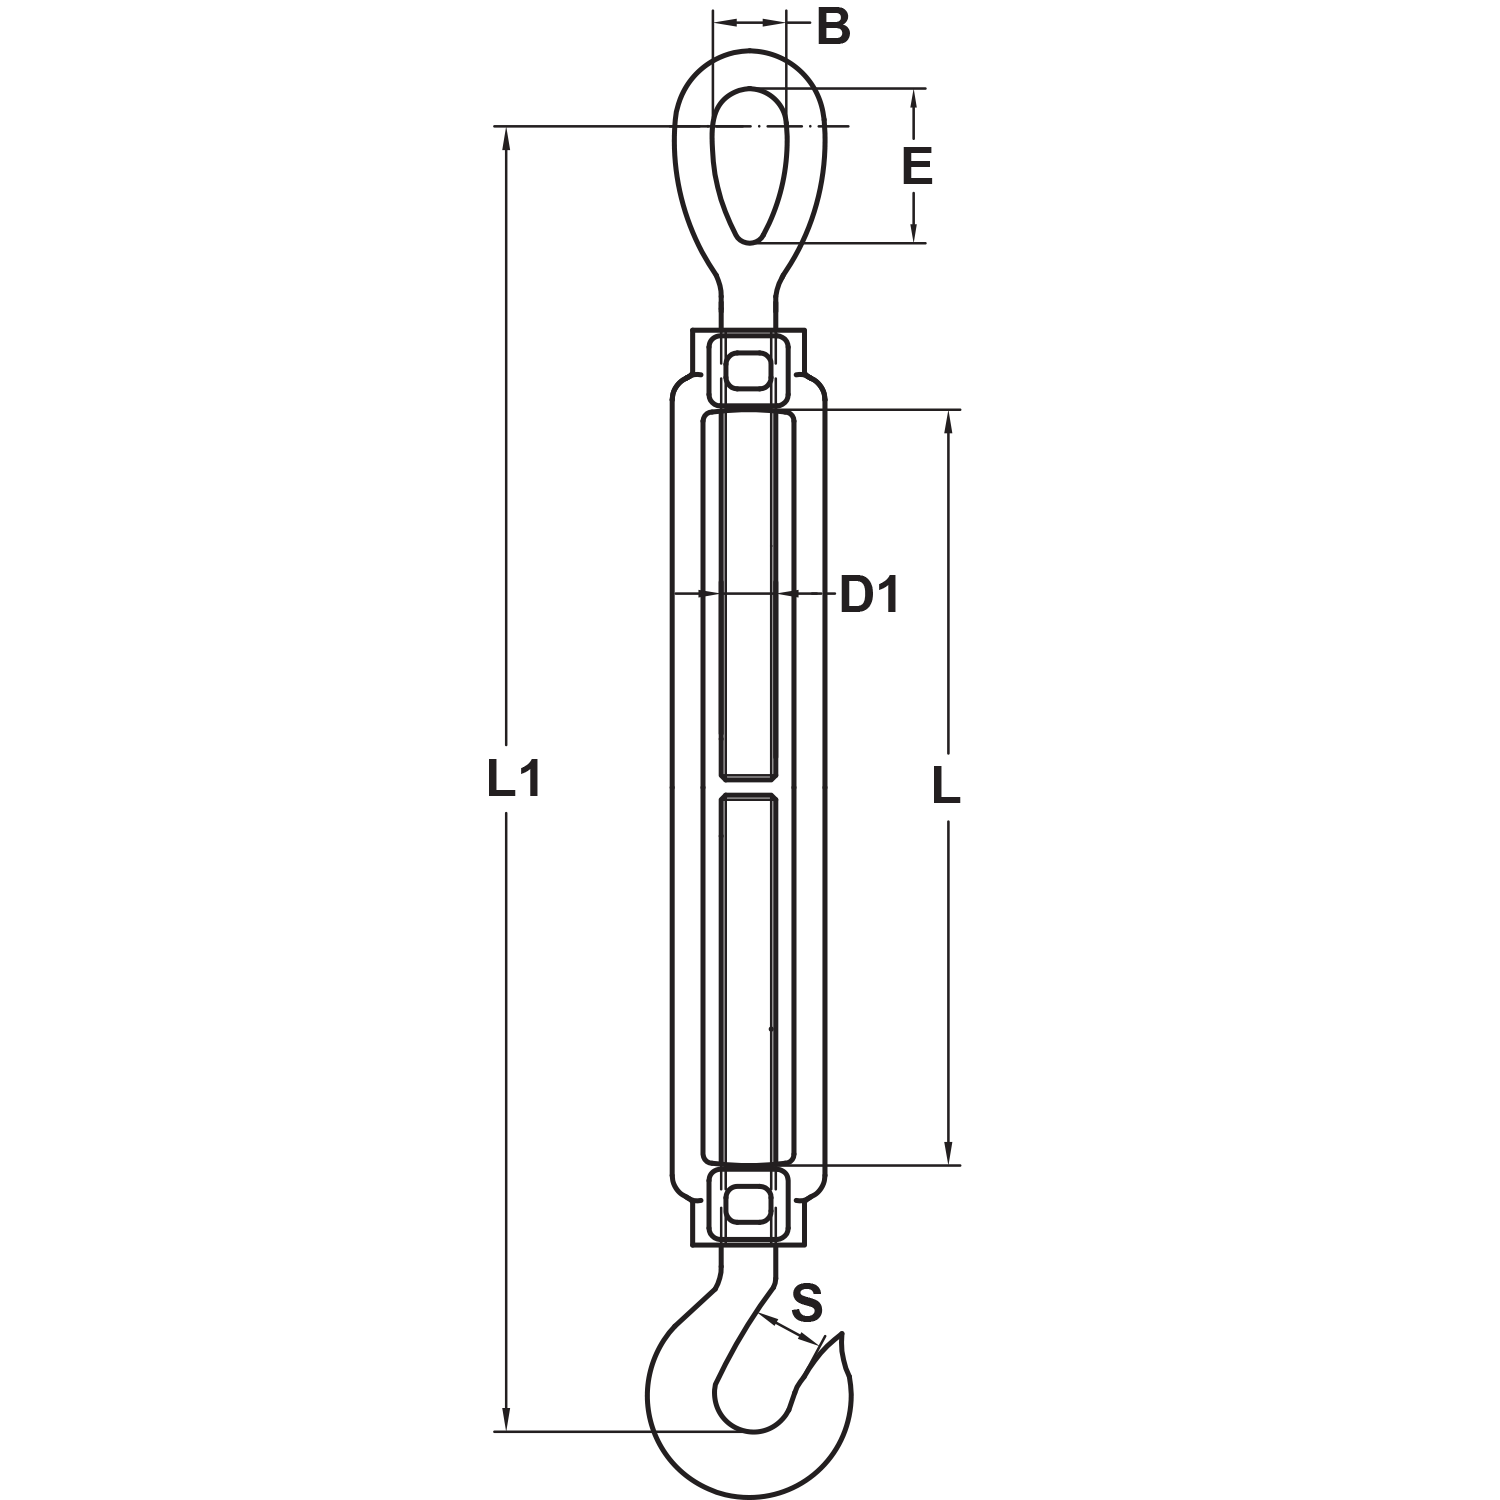 1-4-x-4-stainless-steel-hook-eye-turnbuckle-us-type-diagram